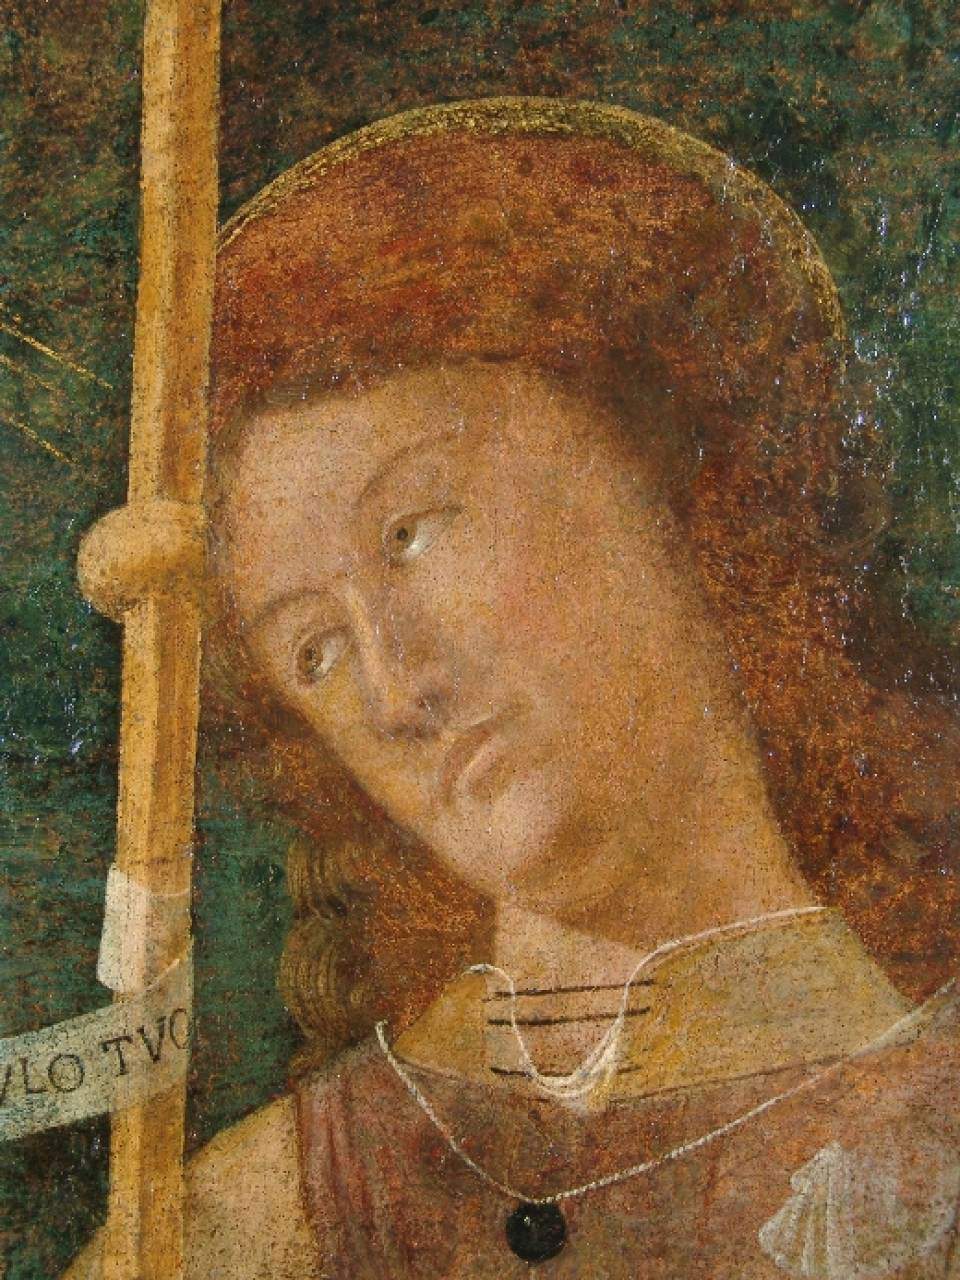 Bartolomeo della Gatta's St. Rocco returns after restoration to the Horne Museum